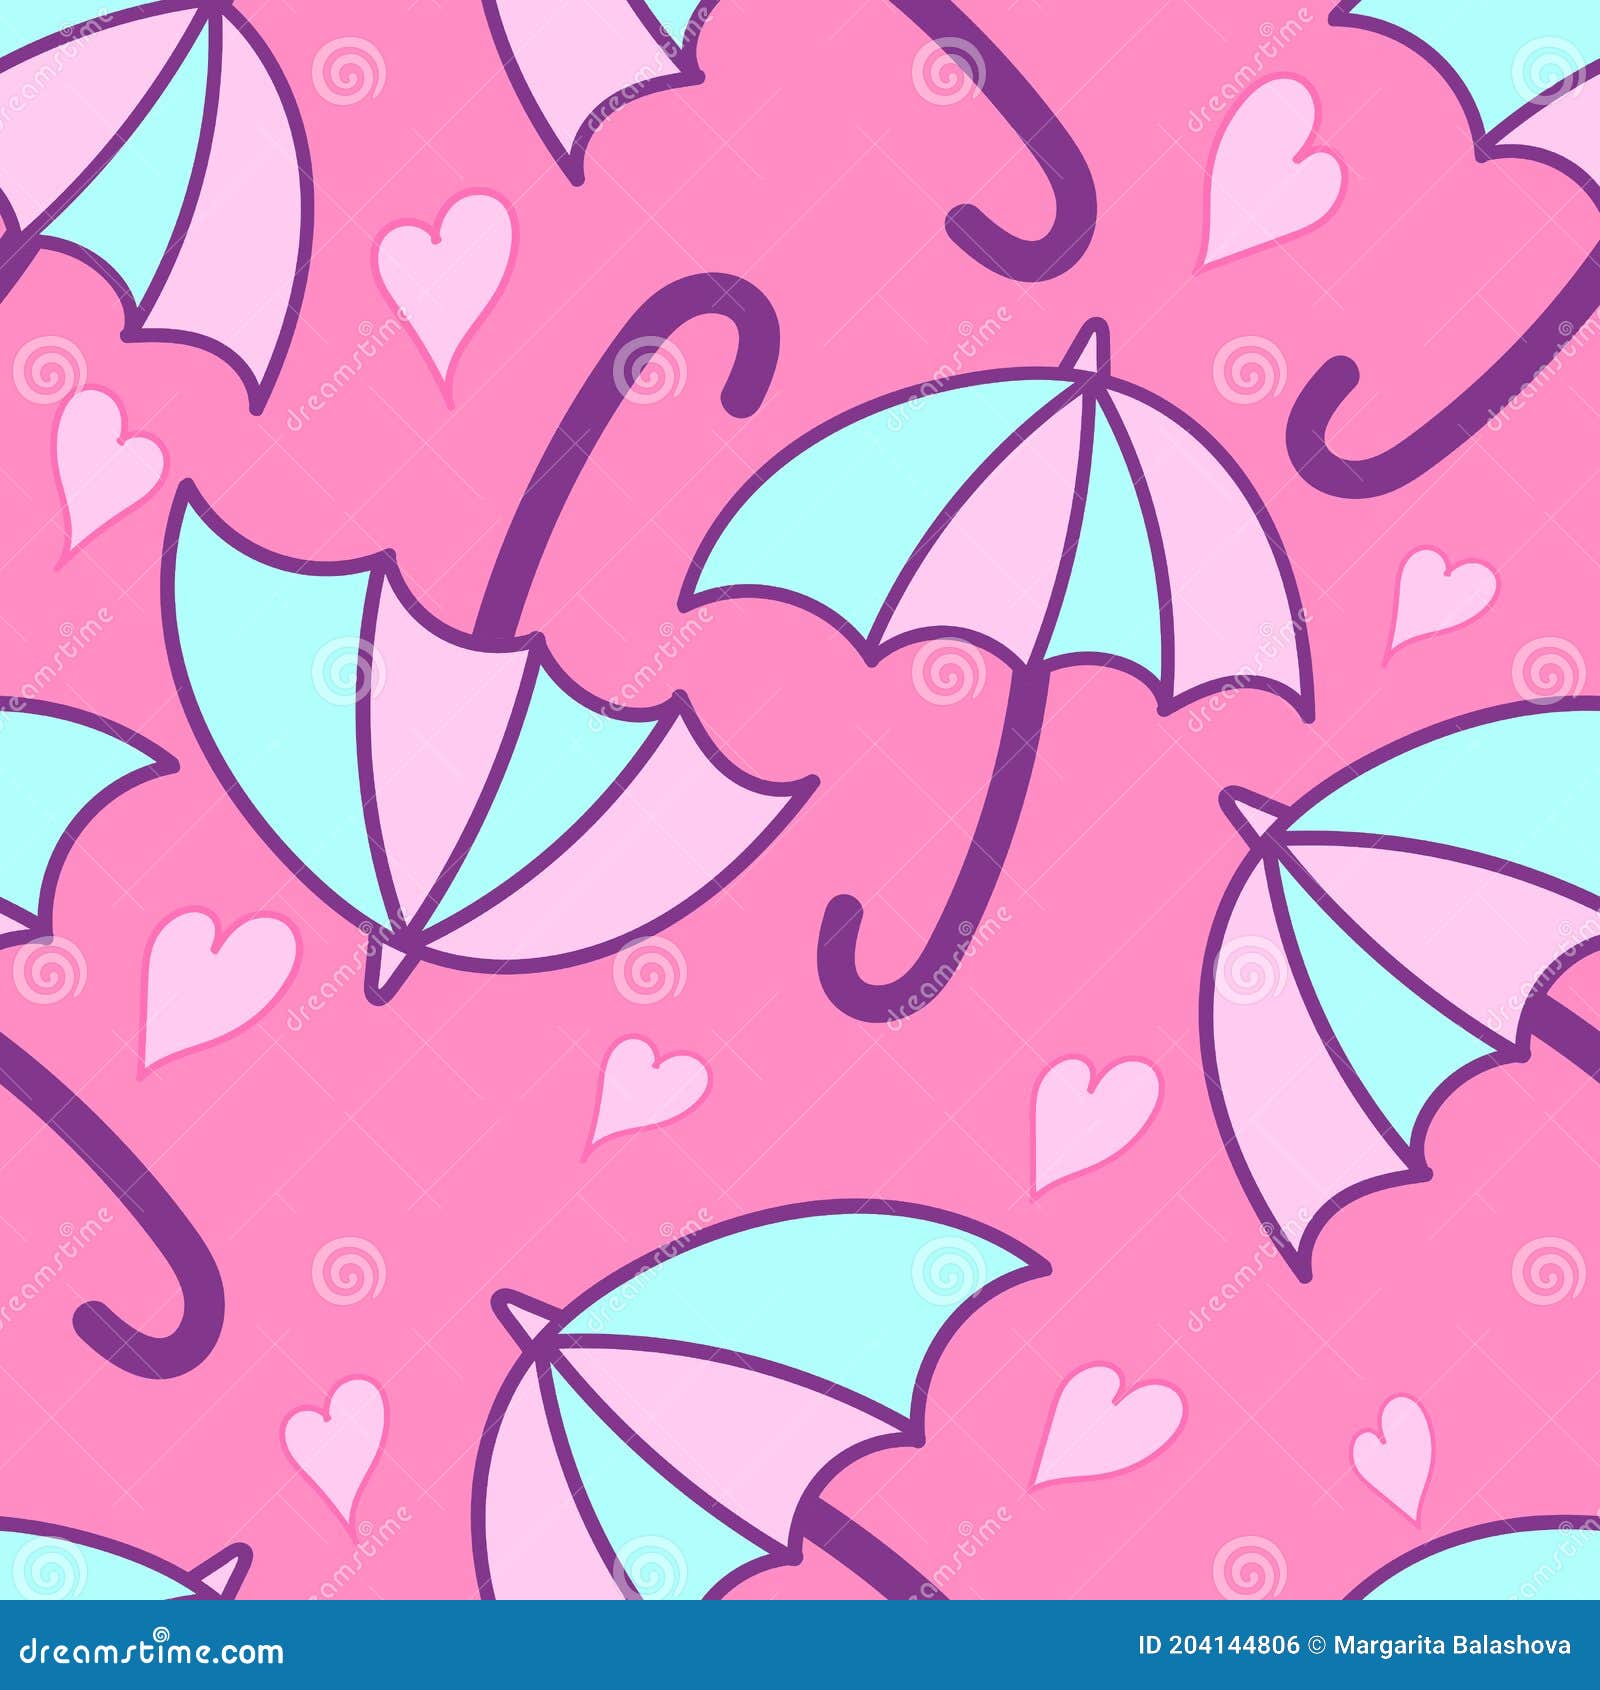 Hãy chiêm ngưỡng mẫu hình Vector bình dân với ô dù và hình trái tim trên nền hồng đầy dịu dàng. Sắc hồng tươi sáng của ô dù sẽ khiến bạn cảm thấy thật sự vui tươi và hạnh phúc. Hãy cùng khám phá hình ảnh đáng yêu này ngay thôi!